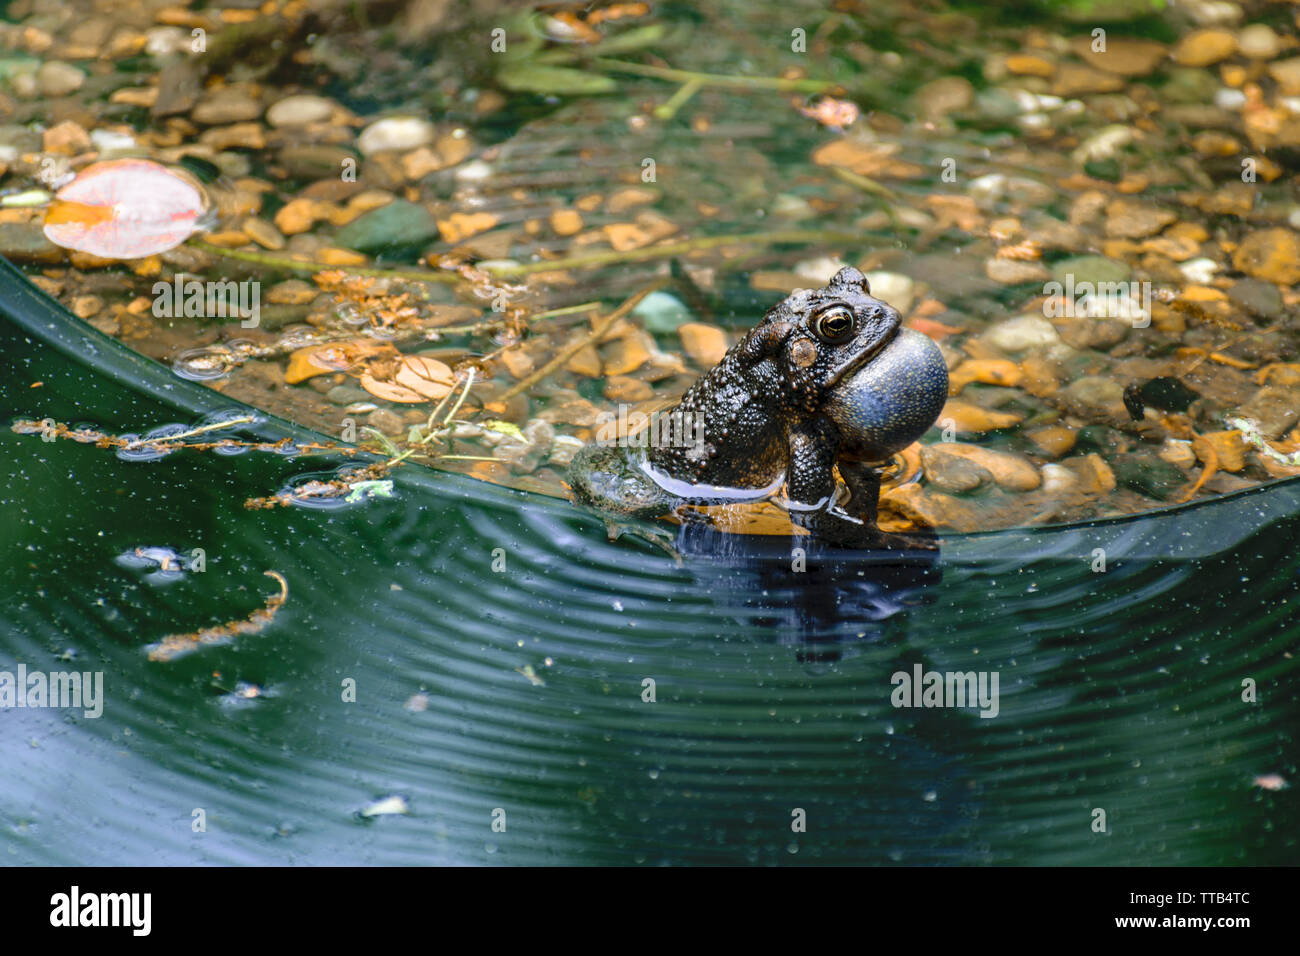 Ein kleiner brauner Kröte quaken mit Kehle aufgeblasen, sitzt im flachen Wasser. Stockfoto